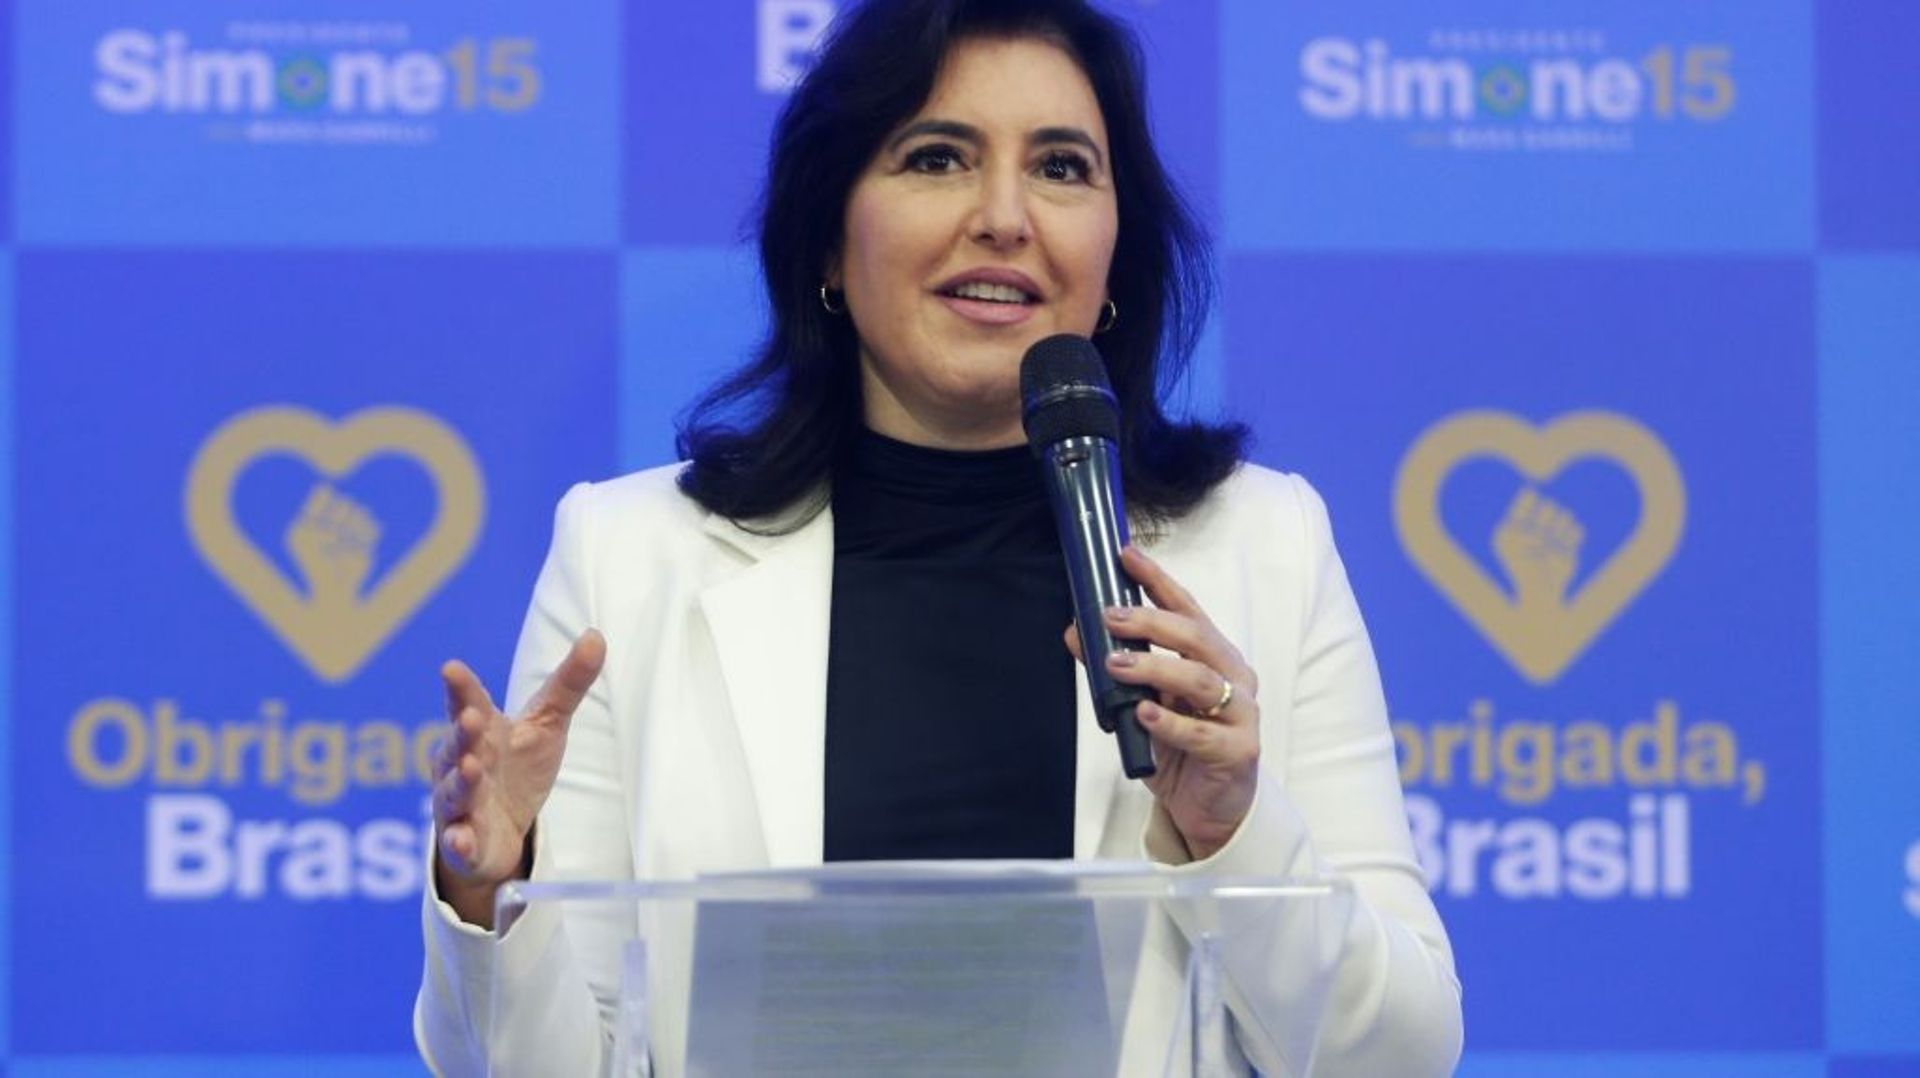 Simone Tebet, troisième score du premier tour de la présidentielle brésilienne, annonce le 5 octobre 2022 à Sao Paulo qu’elle votera pour Luiz Inacio "Lula" da Silva